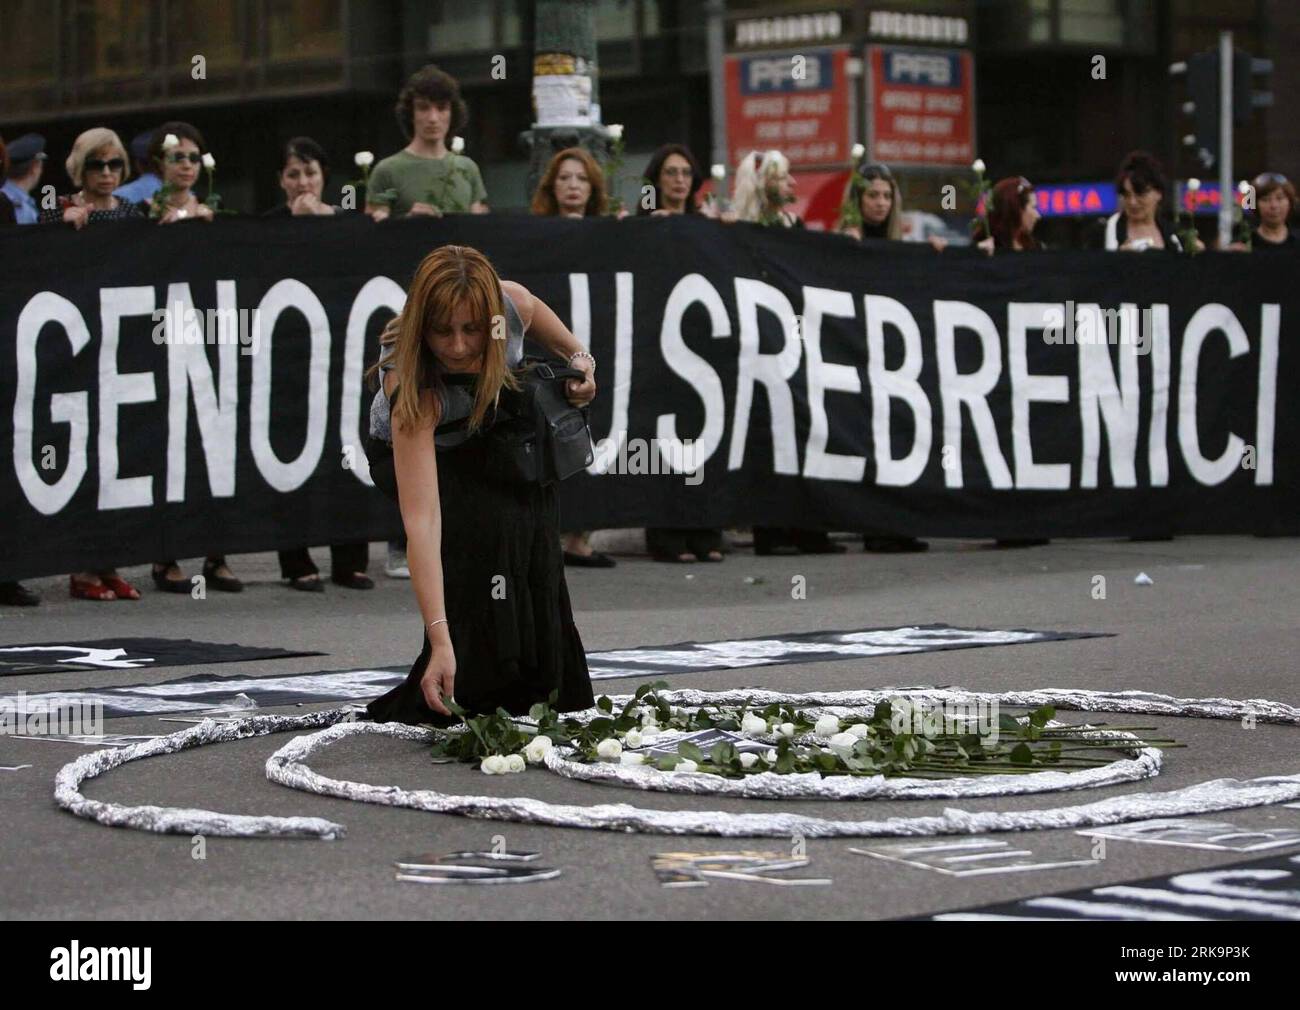 Bildnummer: 54220823 Datum: 10.07.2010 Copyright: imago/Xinhua (100710) -- BELGRAD, 10 1995. Juli 2010 (Xinhua) -- Mitglieder der NGO Women in Black nehmen am 10. Juli 2010 am Vorabend des 15. Jahrestages des Massakers von Srebrenica in Belgrad, Serbien, Teil, um die Öffentlichkeit für die Kriegsverbrechen zu sensibilisieren. Im Juli 1995 wurden in Srebrenica mehr als 8.000 bosnische muslimische Männer und Jungen von bosnischen serbischen Truppen und einer paramilitärischen Einheit aus Serbien massakriert. Das Massaker von Srebrenica ist der größte Massenmord in Europa seit dem Zweiten Weltkrieg (Xinhua/Beta)(Serbia Out) (zw) (2)SERBIEN-BELGRAD-PROTEST-SRE Stockfoto